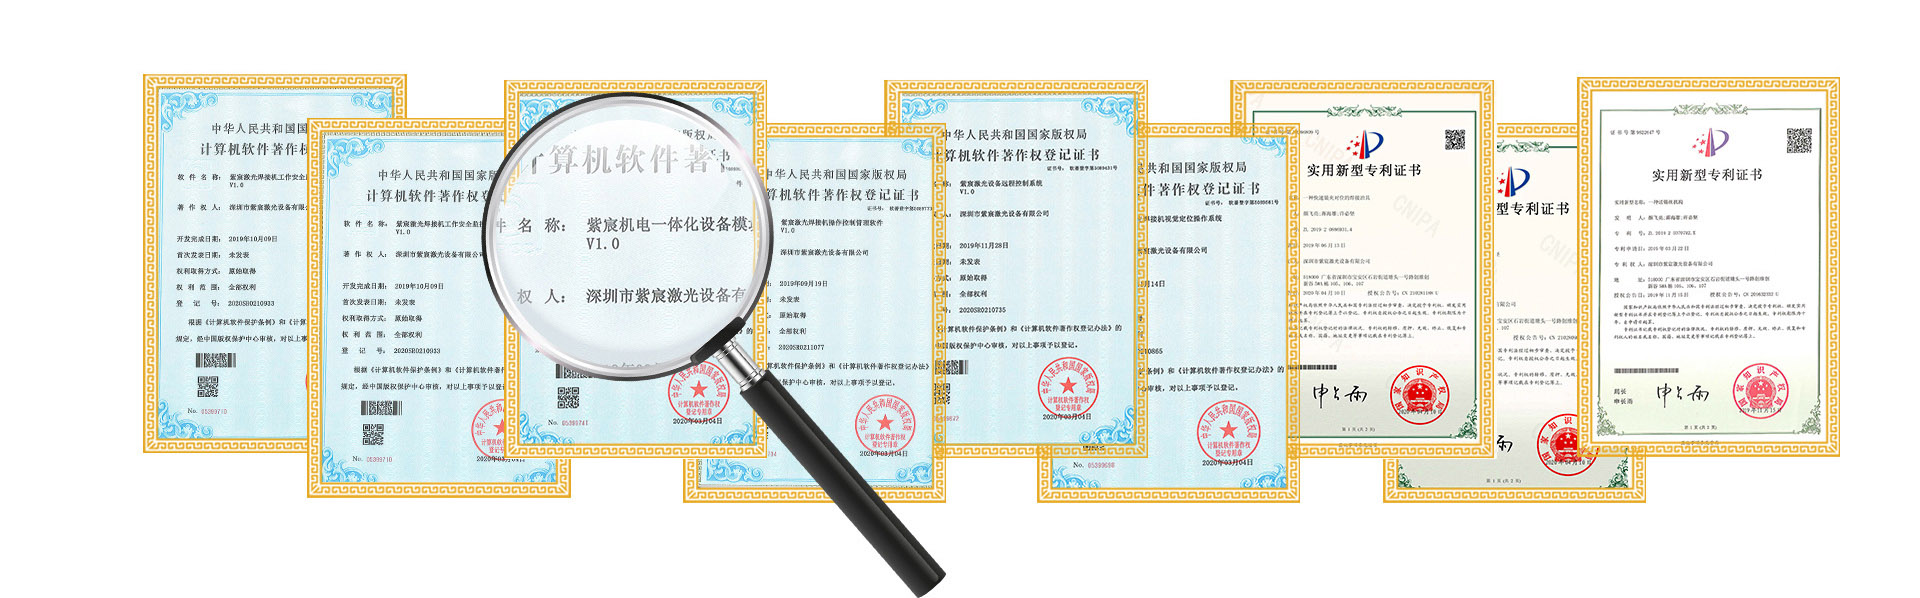 激光焊接設備專利證書